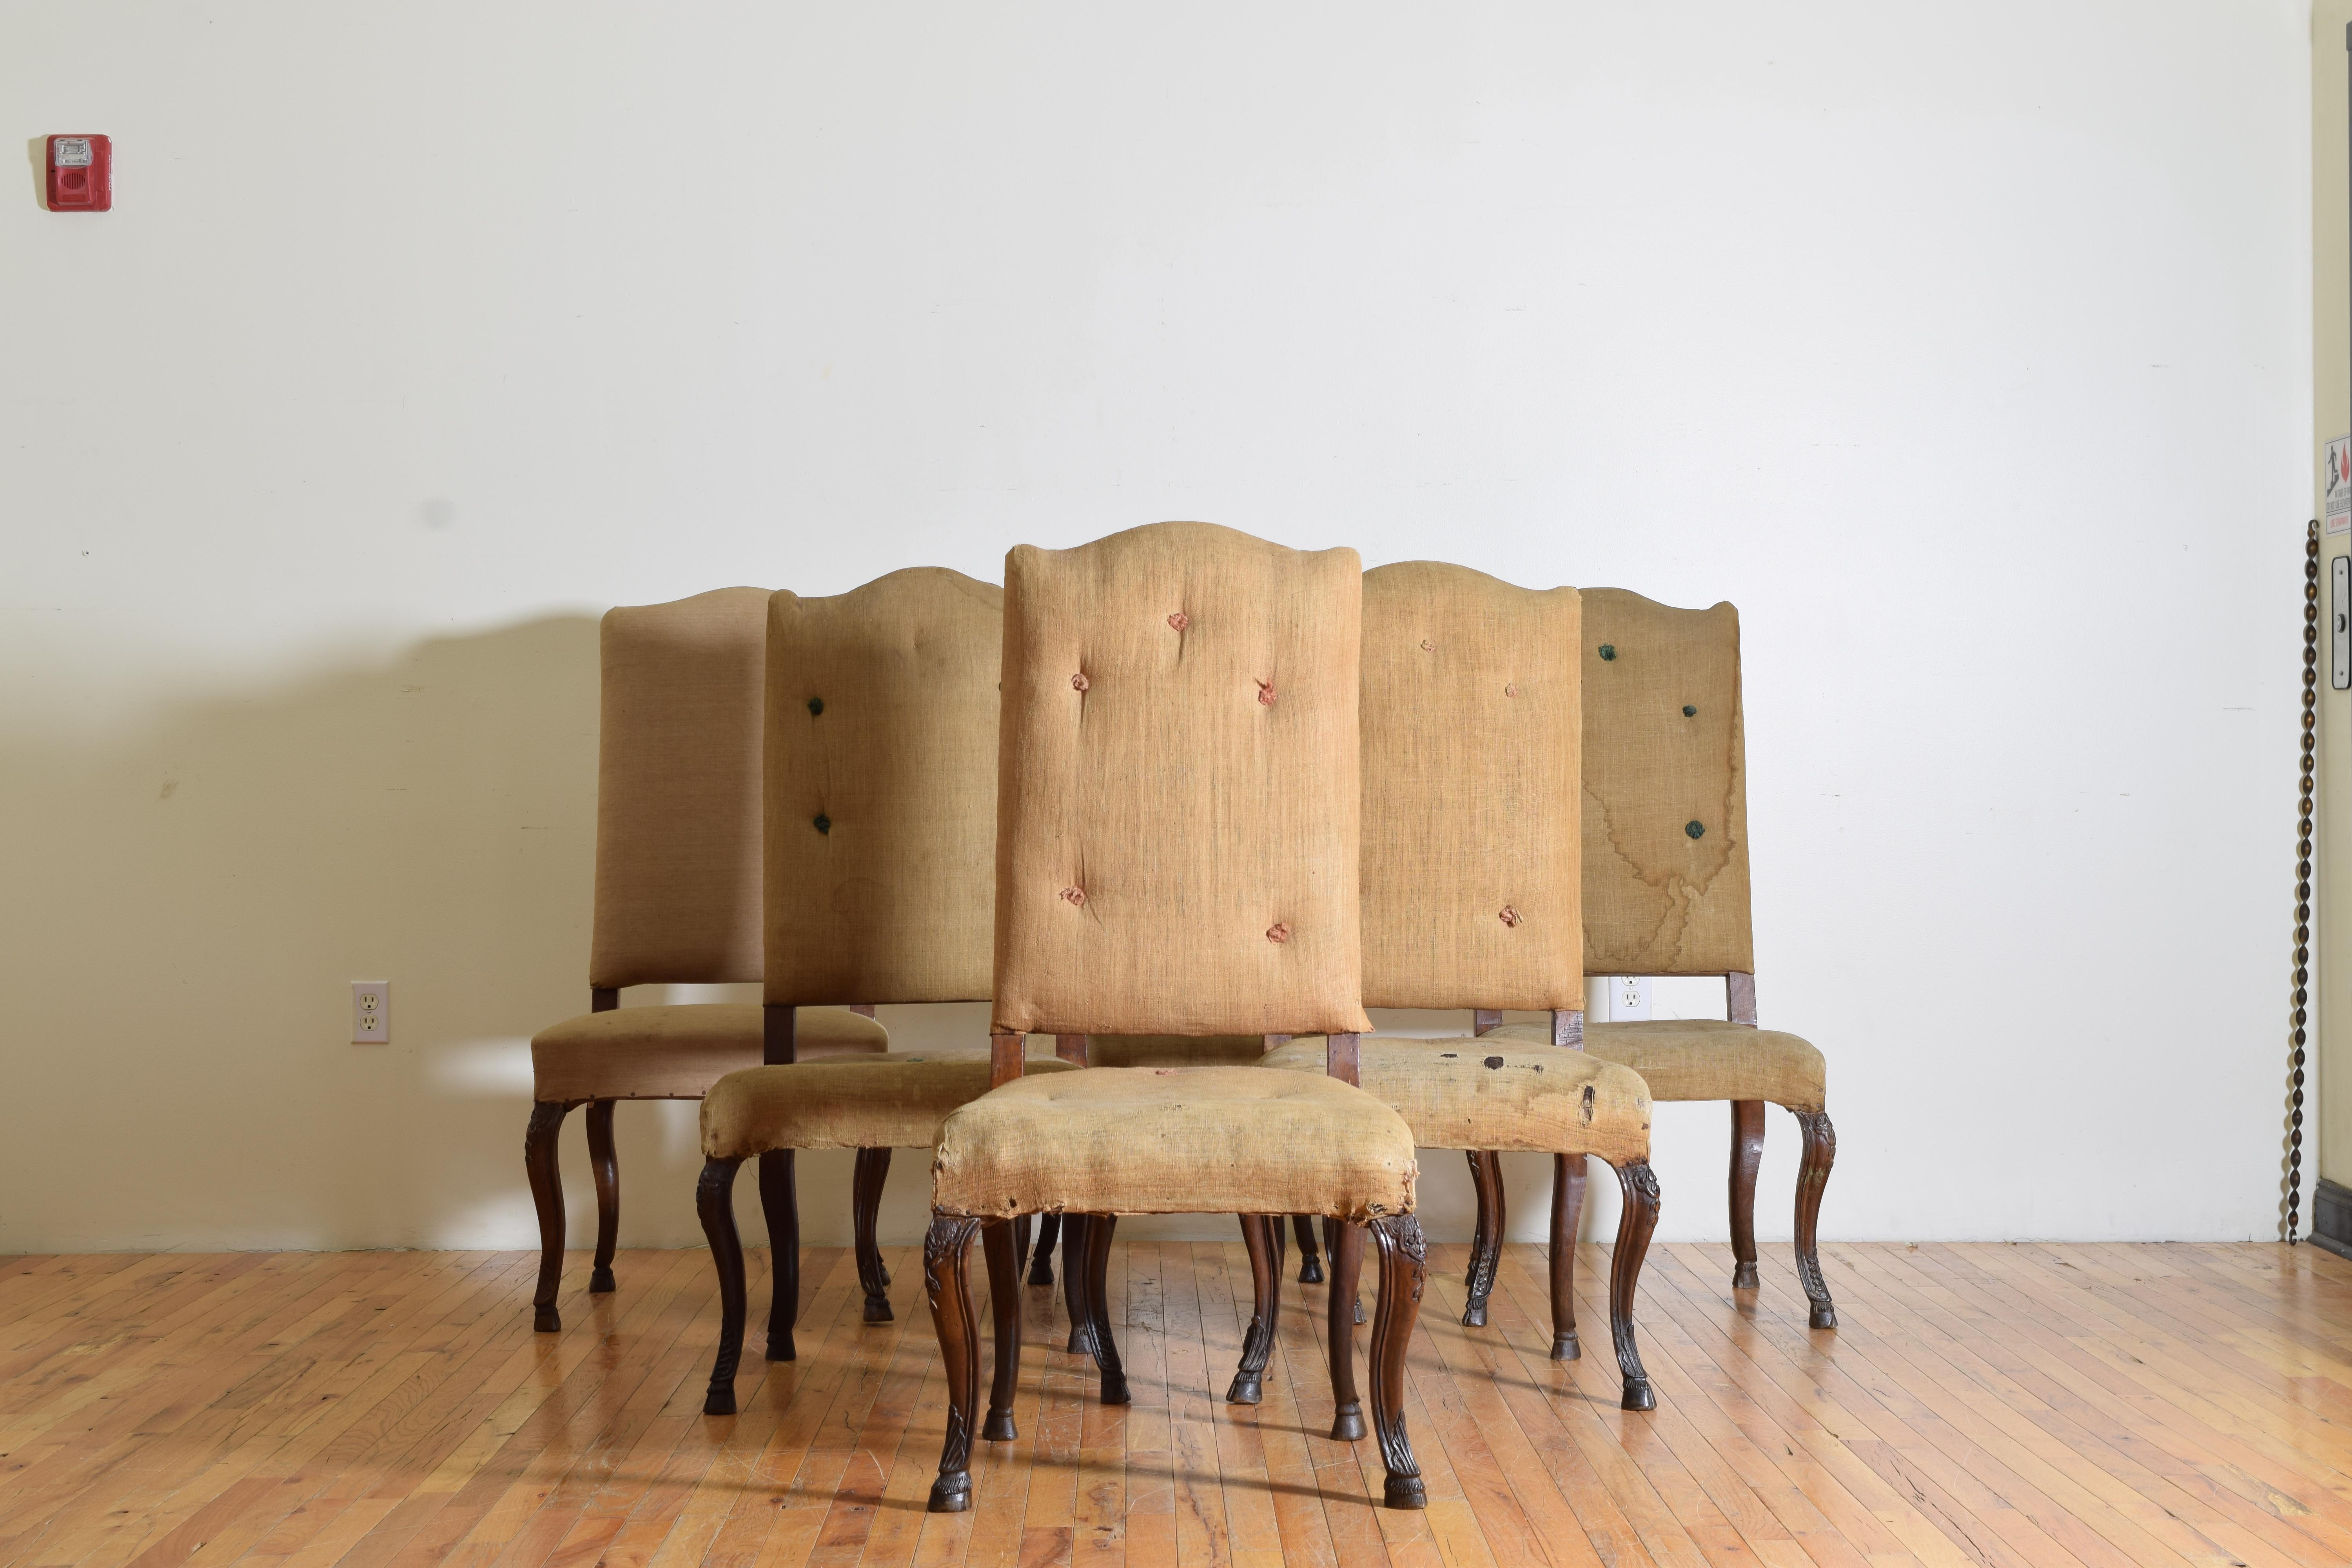 Diese Stühle haben serpentinenförmige Rückenlehnen und großzügige Sitzflächen mit schön geformten und geschnitzten Beinen, die in Hirschhuffüßen enden, große und bequeme Esszimmerstühle.